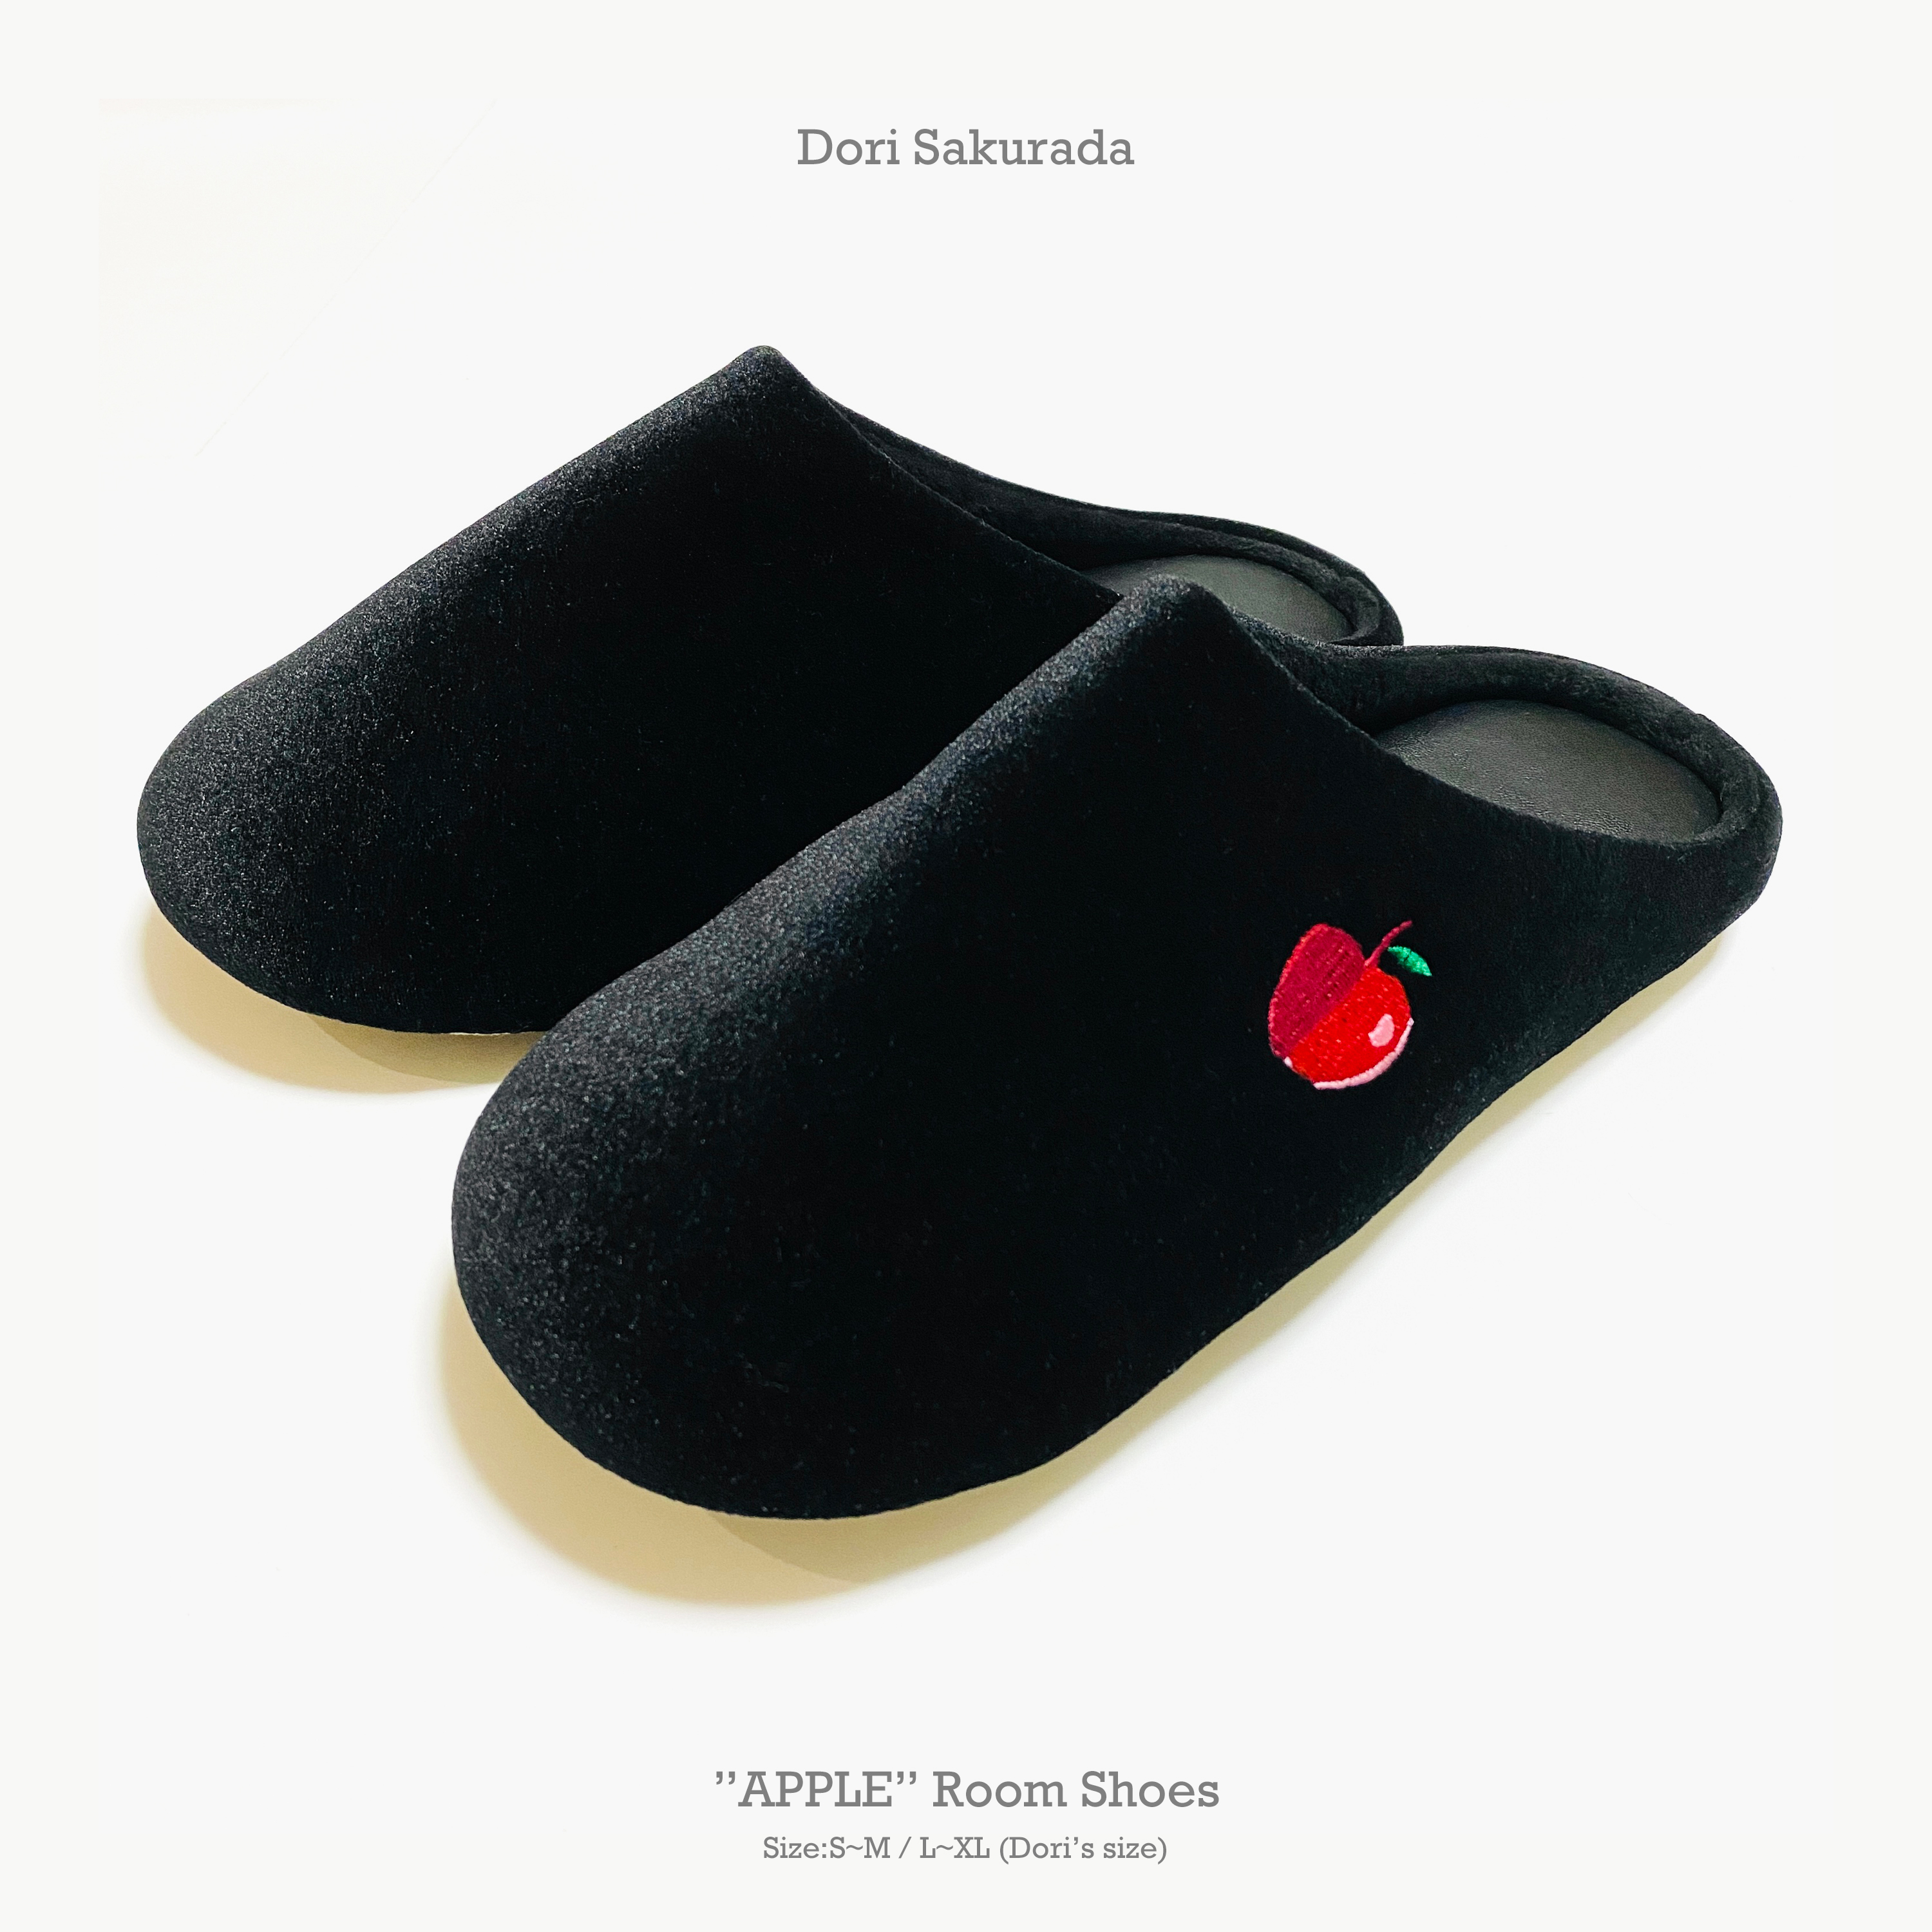 桜田通プロデュースグッズ「”APPLE” Room Shoes」「Nail oil -Dori Amber vanilla- 2021 ver.」販売決定!!